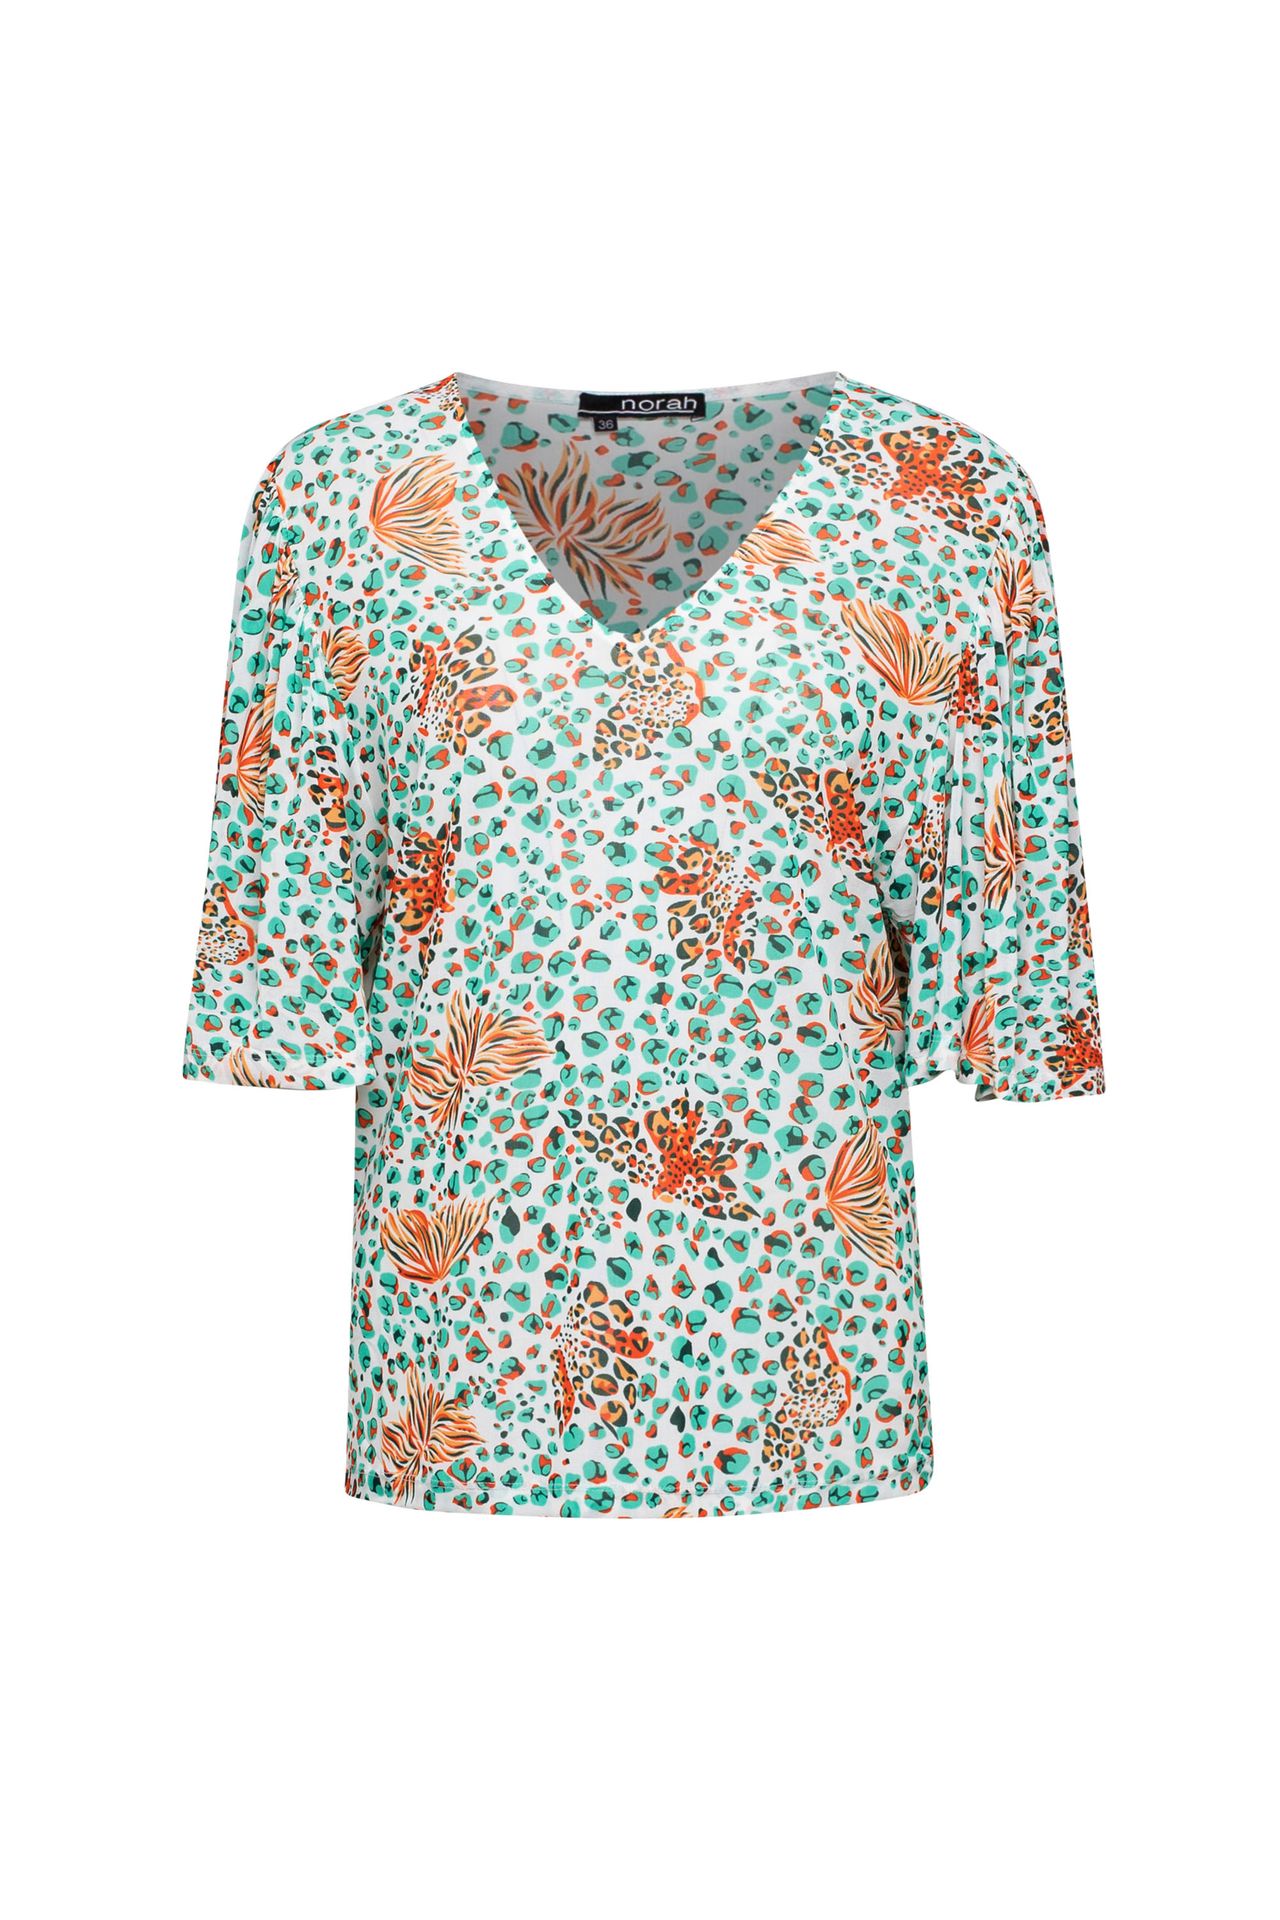 Norah Shirt met print jade multicolor 212858-573